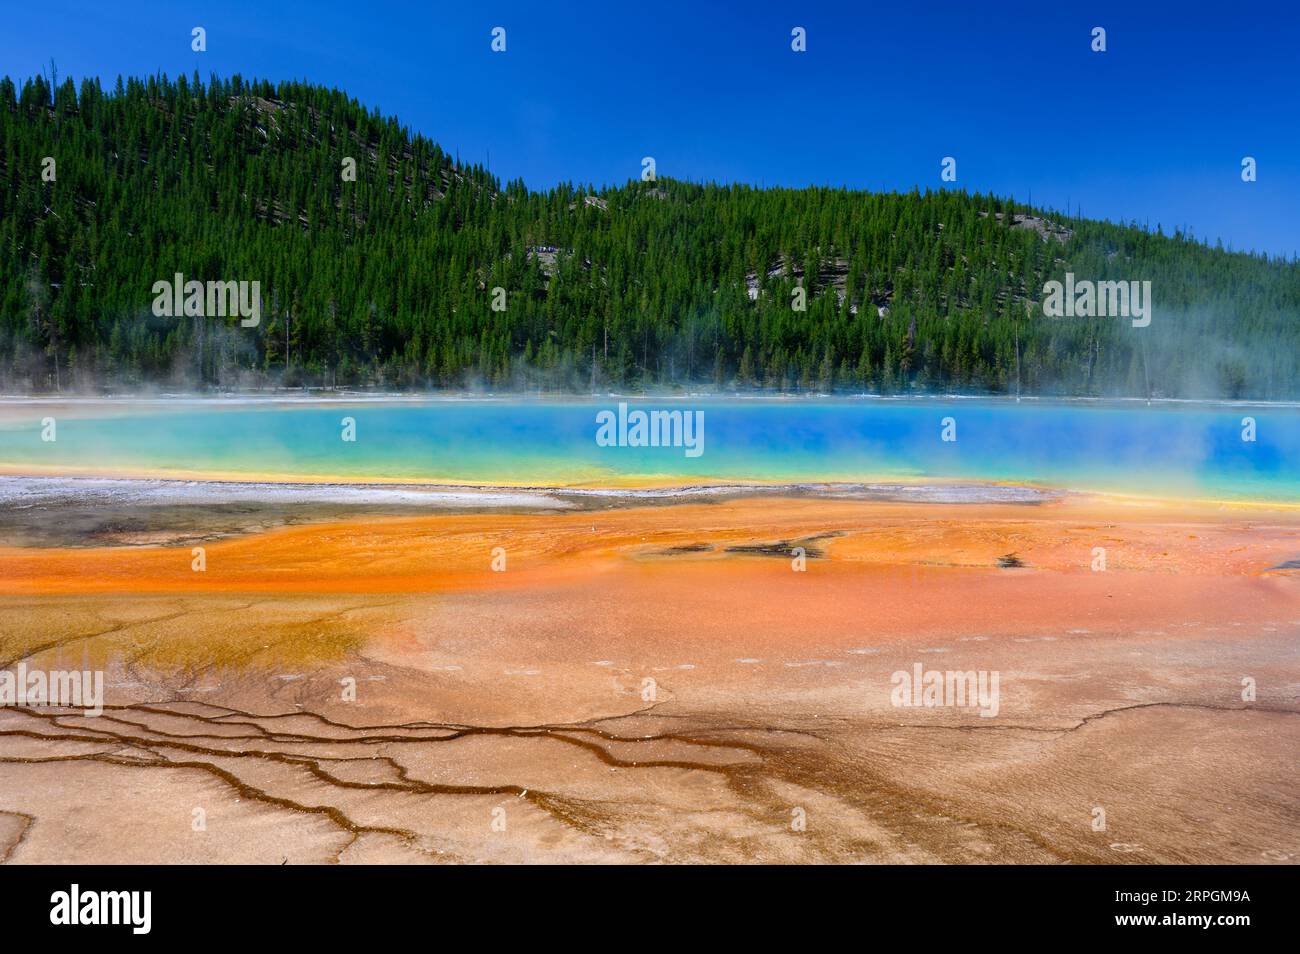 Les couleurs vives de Grand Prismatic Spring dans le parc national de Yellowstone, États-Unis Banque D'Images